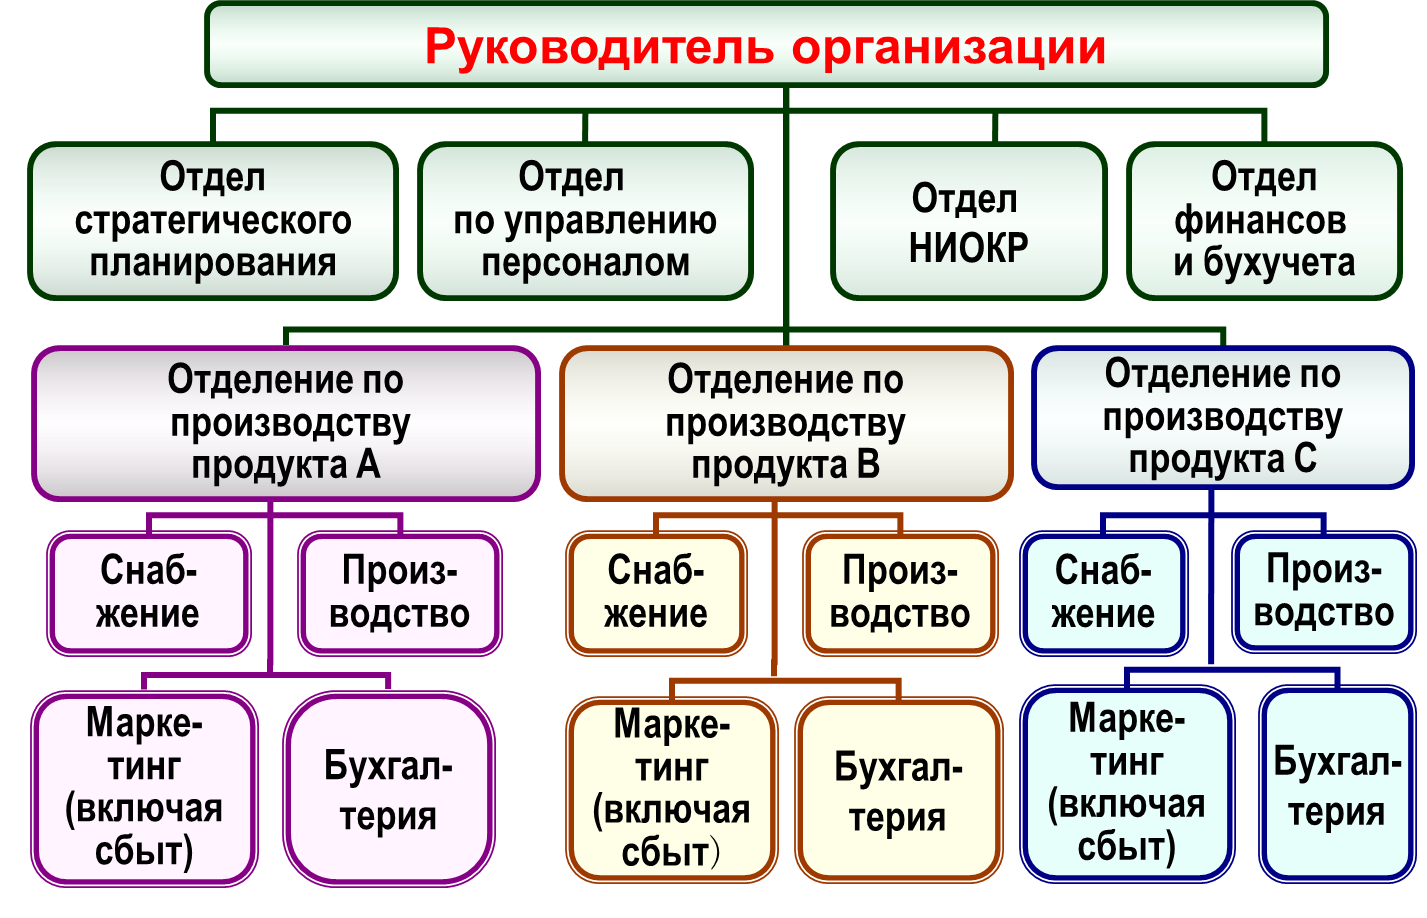 Функциональная структура организации схема: основные виды, их плюсы и минусы – схема, виды, плюсы и минусы